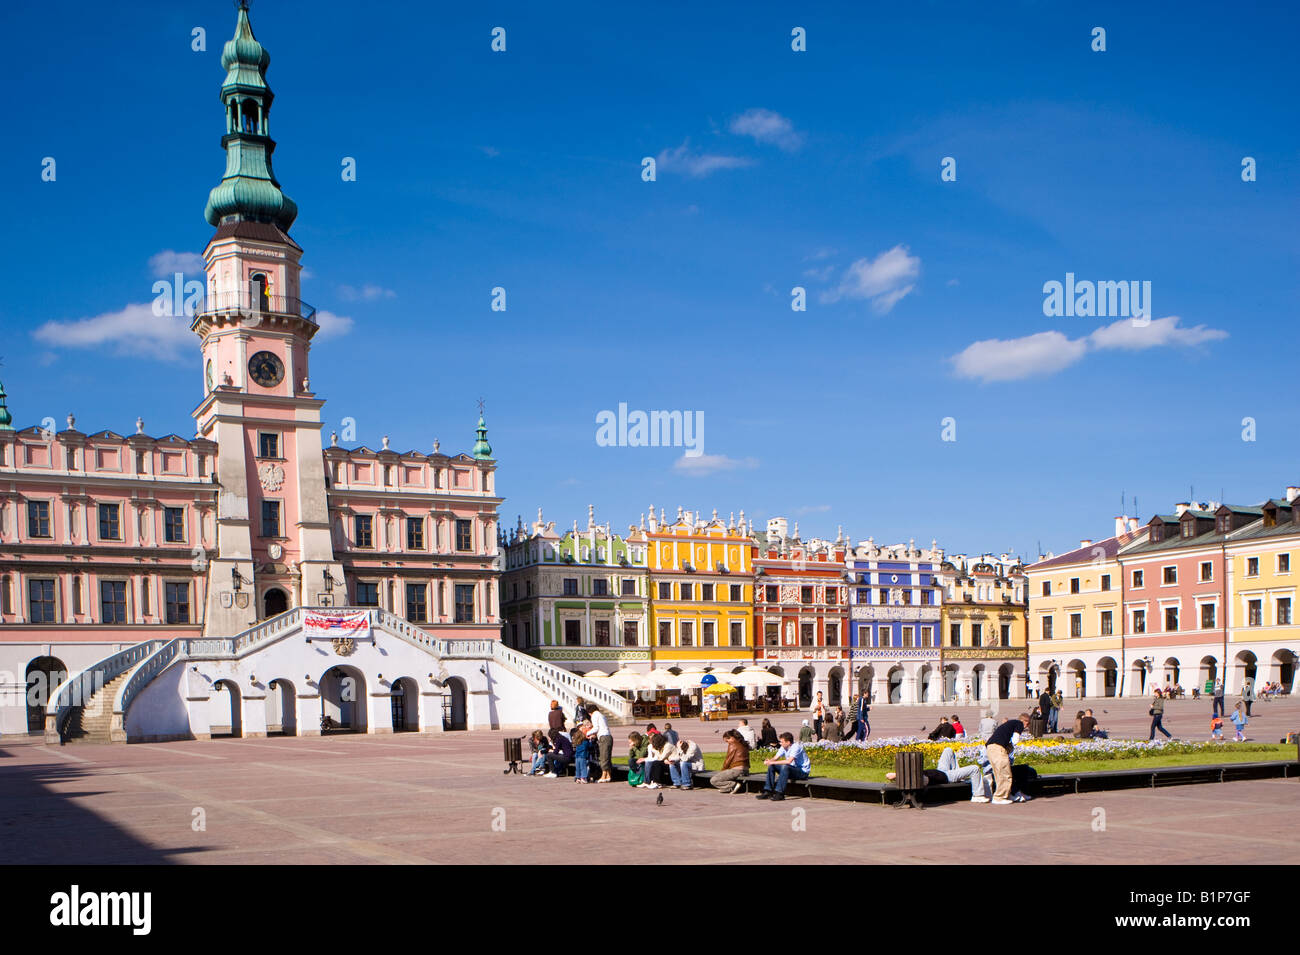 Rathaus und bunten Bürgerhäuser am Marktplatz alte Stadt Zamosc, Polen Stockfoto